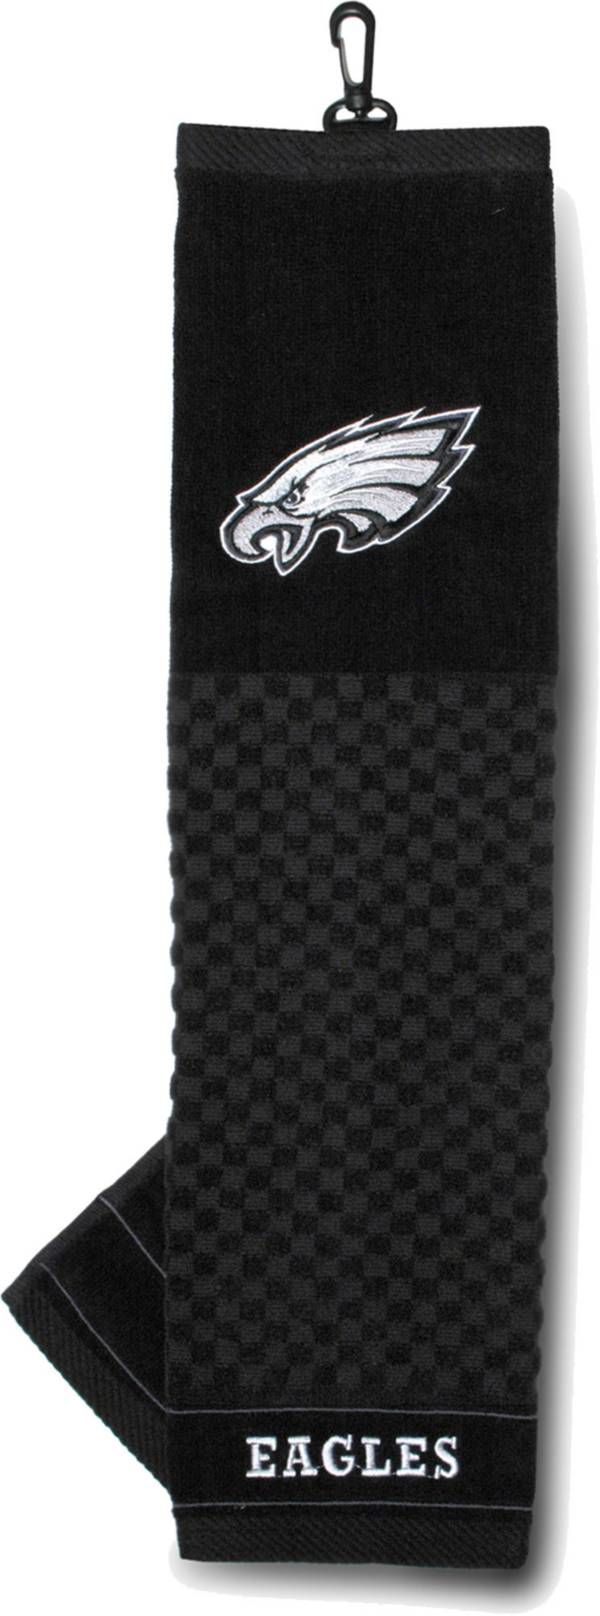 Team Golf Philadelphia Eagles Embroidered Towel product image